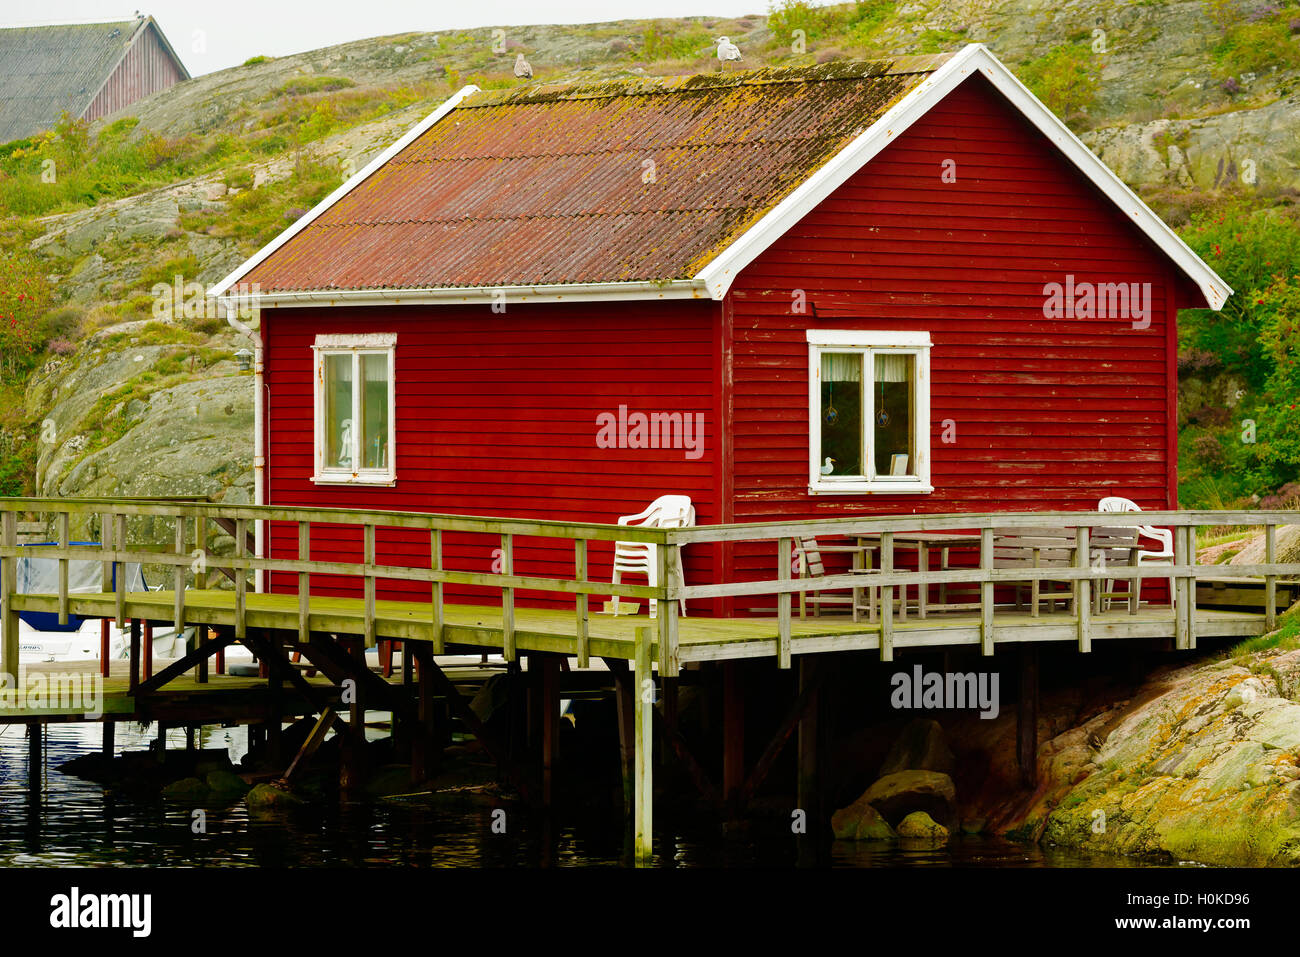 Tjorn, Svezia - 9 Settembre 2016: ambientale documentario di una cabina costiera con veranda circostante. Resto di cabina su palafitte ho Foto Stock